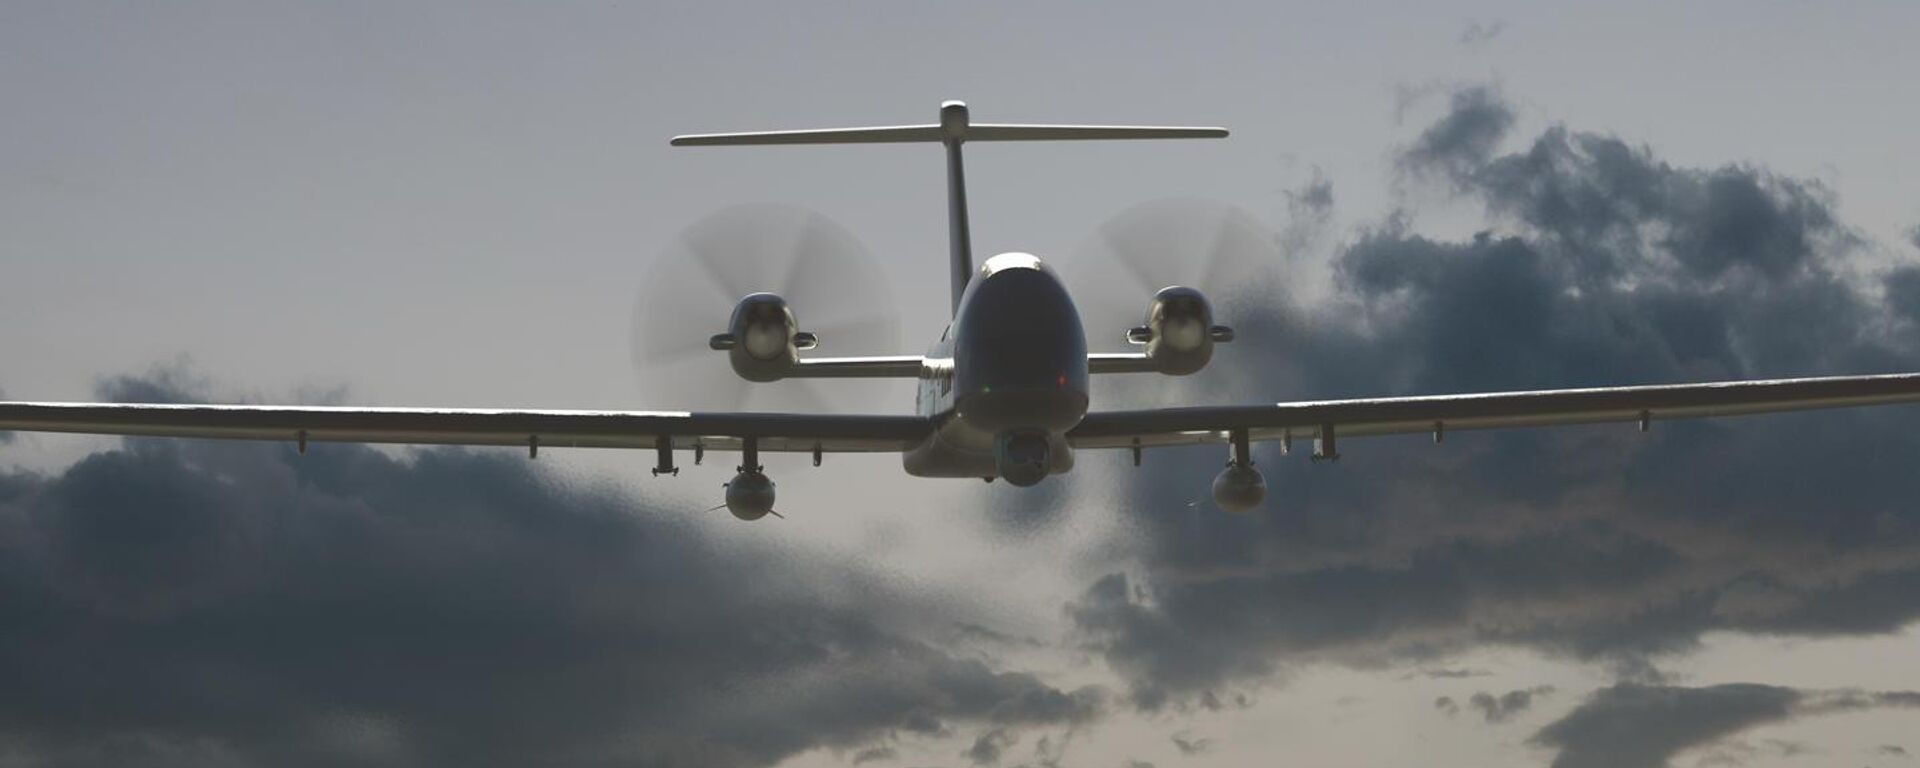 O consórcio europeu Airbus apresentou, no salão aéreos ILA 2022 de Berlim, a maquete em escala real do drone de ataque Eurodrone, bem como as armas que serão utilizadas pelo equipamento - Sputnik Brasil, 1920, 09.01.2023